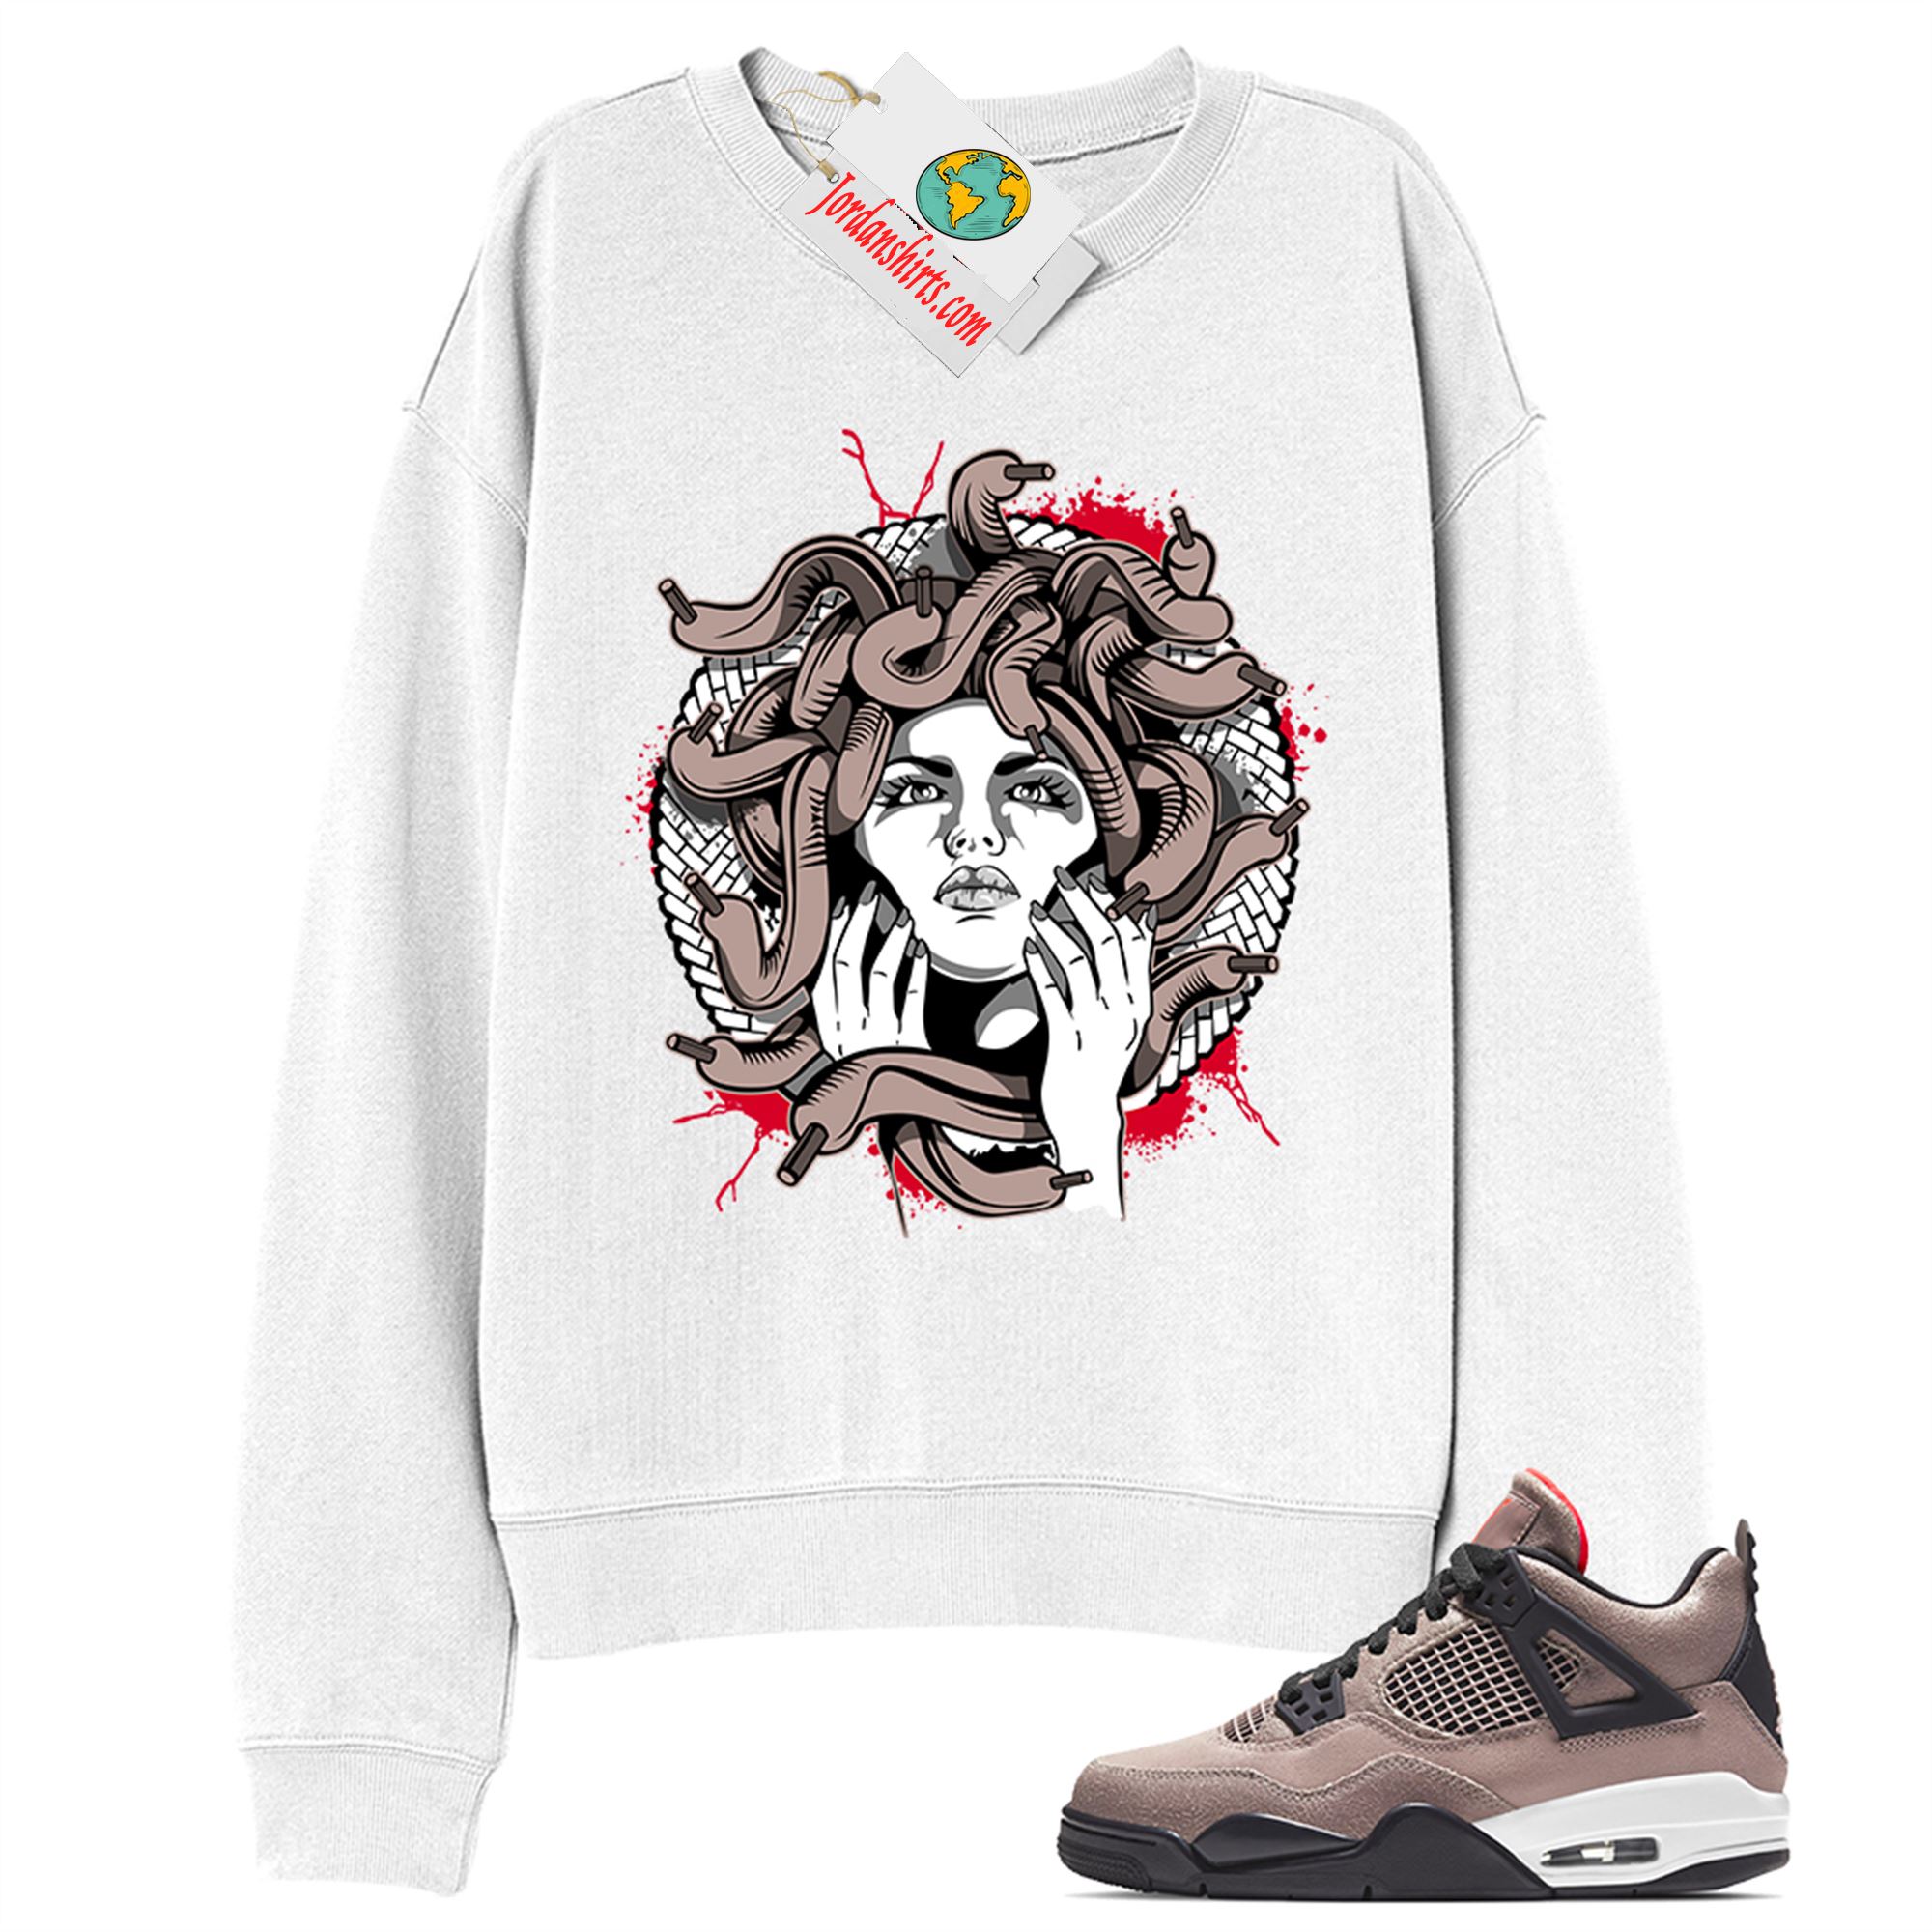 Jordan 4 Sweatshirt, Medusa White Sweatshirt Air Jordan 4 Taupe Haze 4s Size Up To 5xl